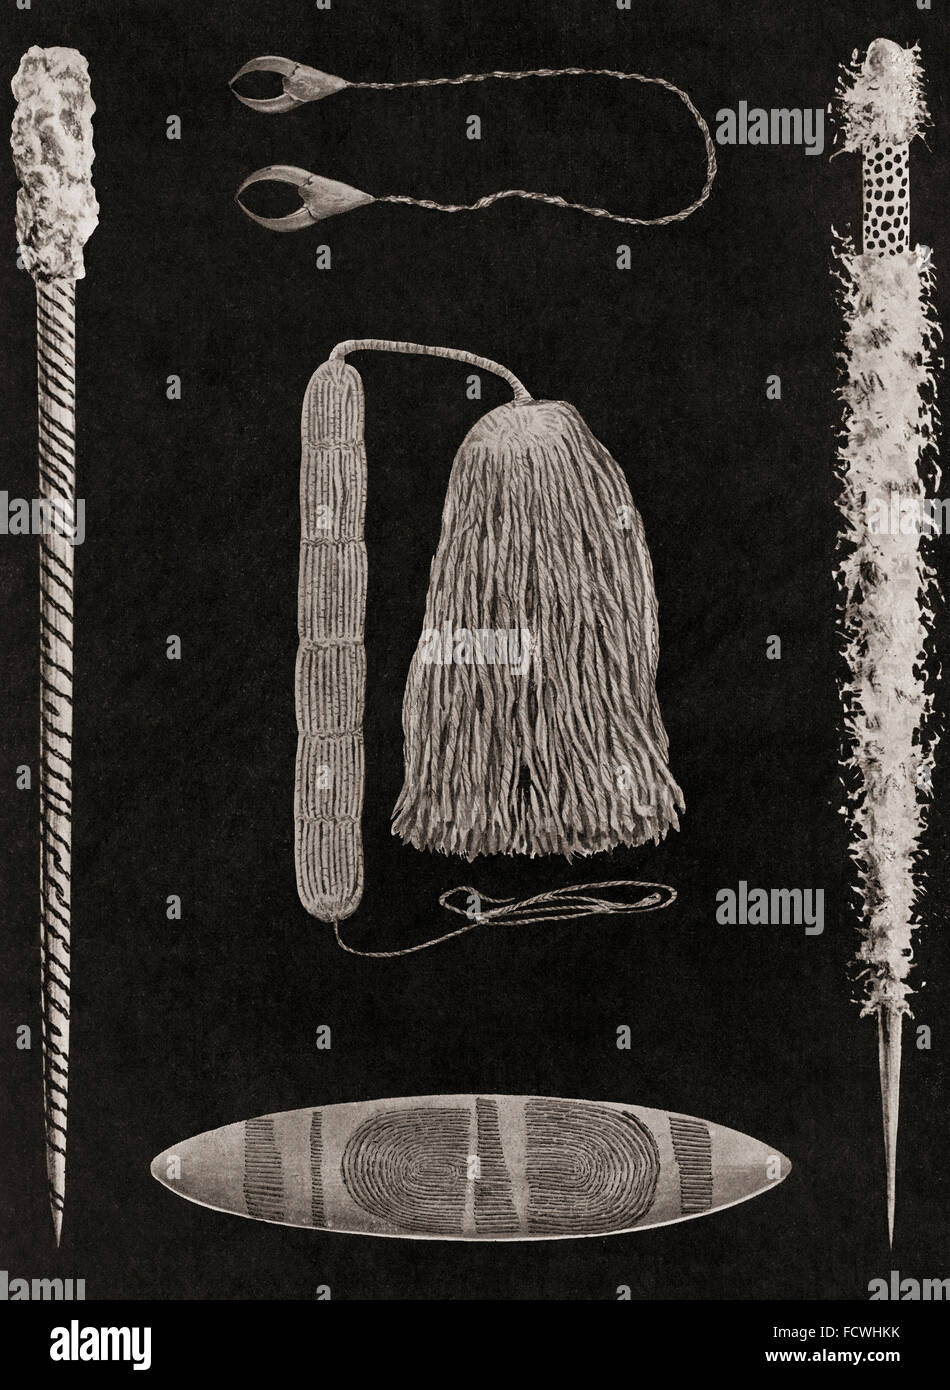 Objetos importantes en ceremonias aborigen australiano: dos tipos de señalización mágico-huesos o palos; un ornamento de eaglehawk's Claws, desgastado alrededor del cuello; una banda para el cuello y borla; un Tjurunga Churinga o. Después de una fotografía del siglo xix. Foto de stock